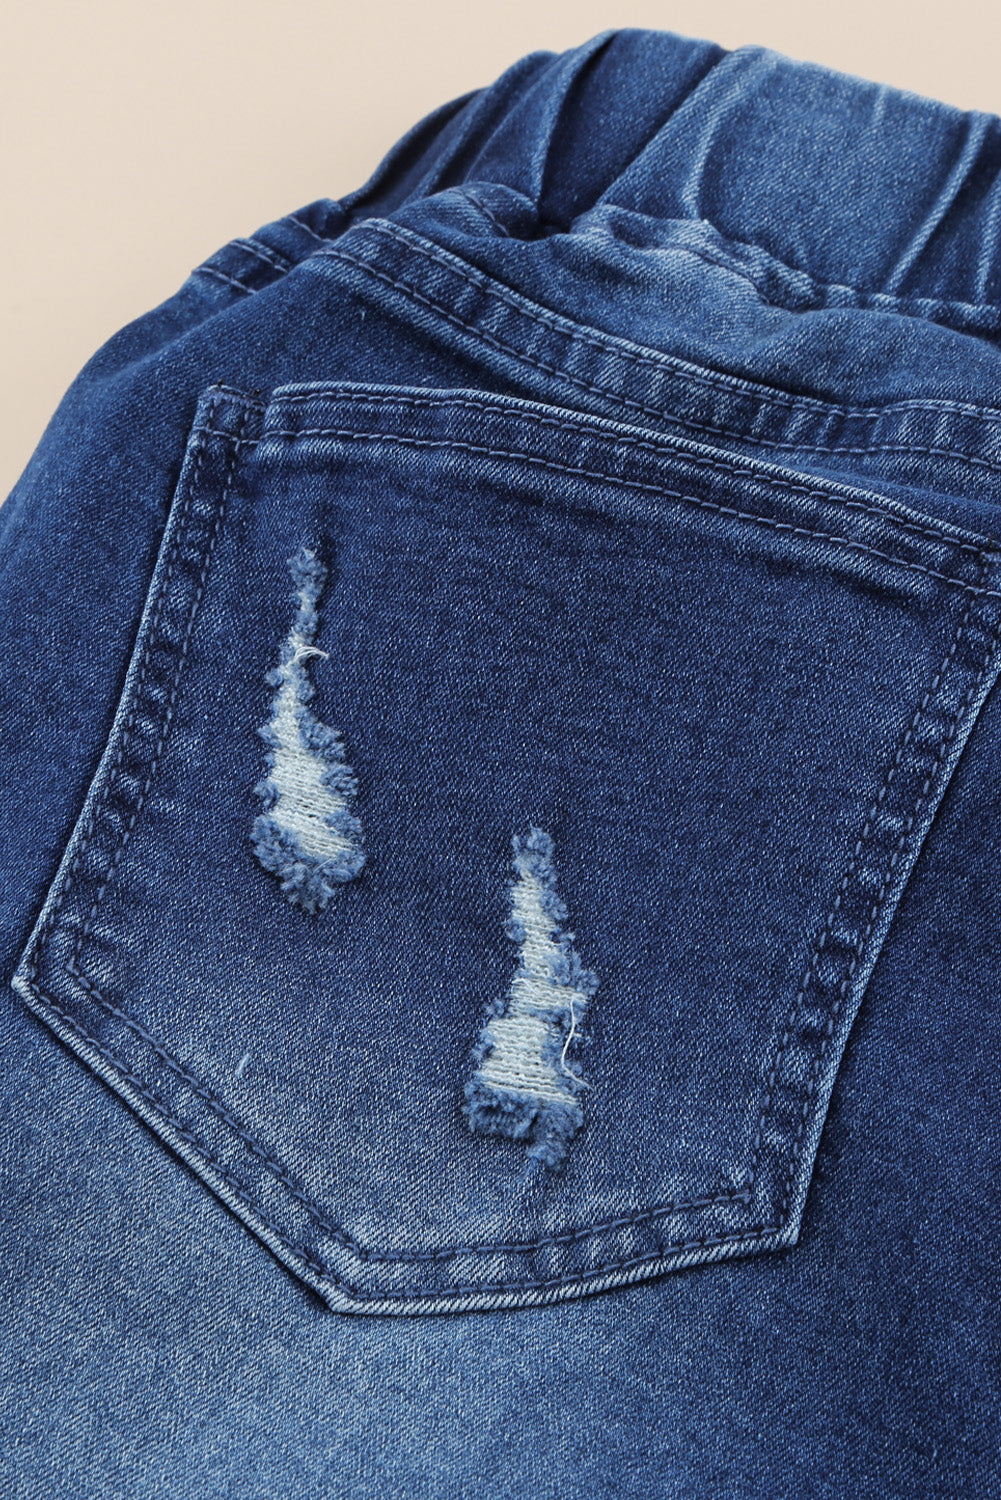 Jeans strappati con foro in vita elastico con coulisse blu